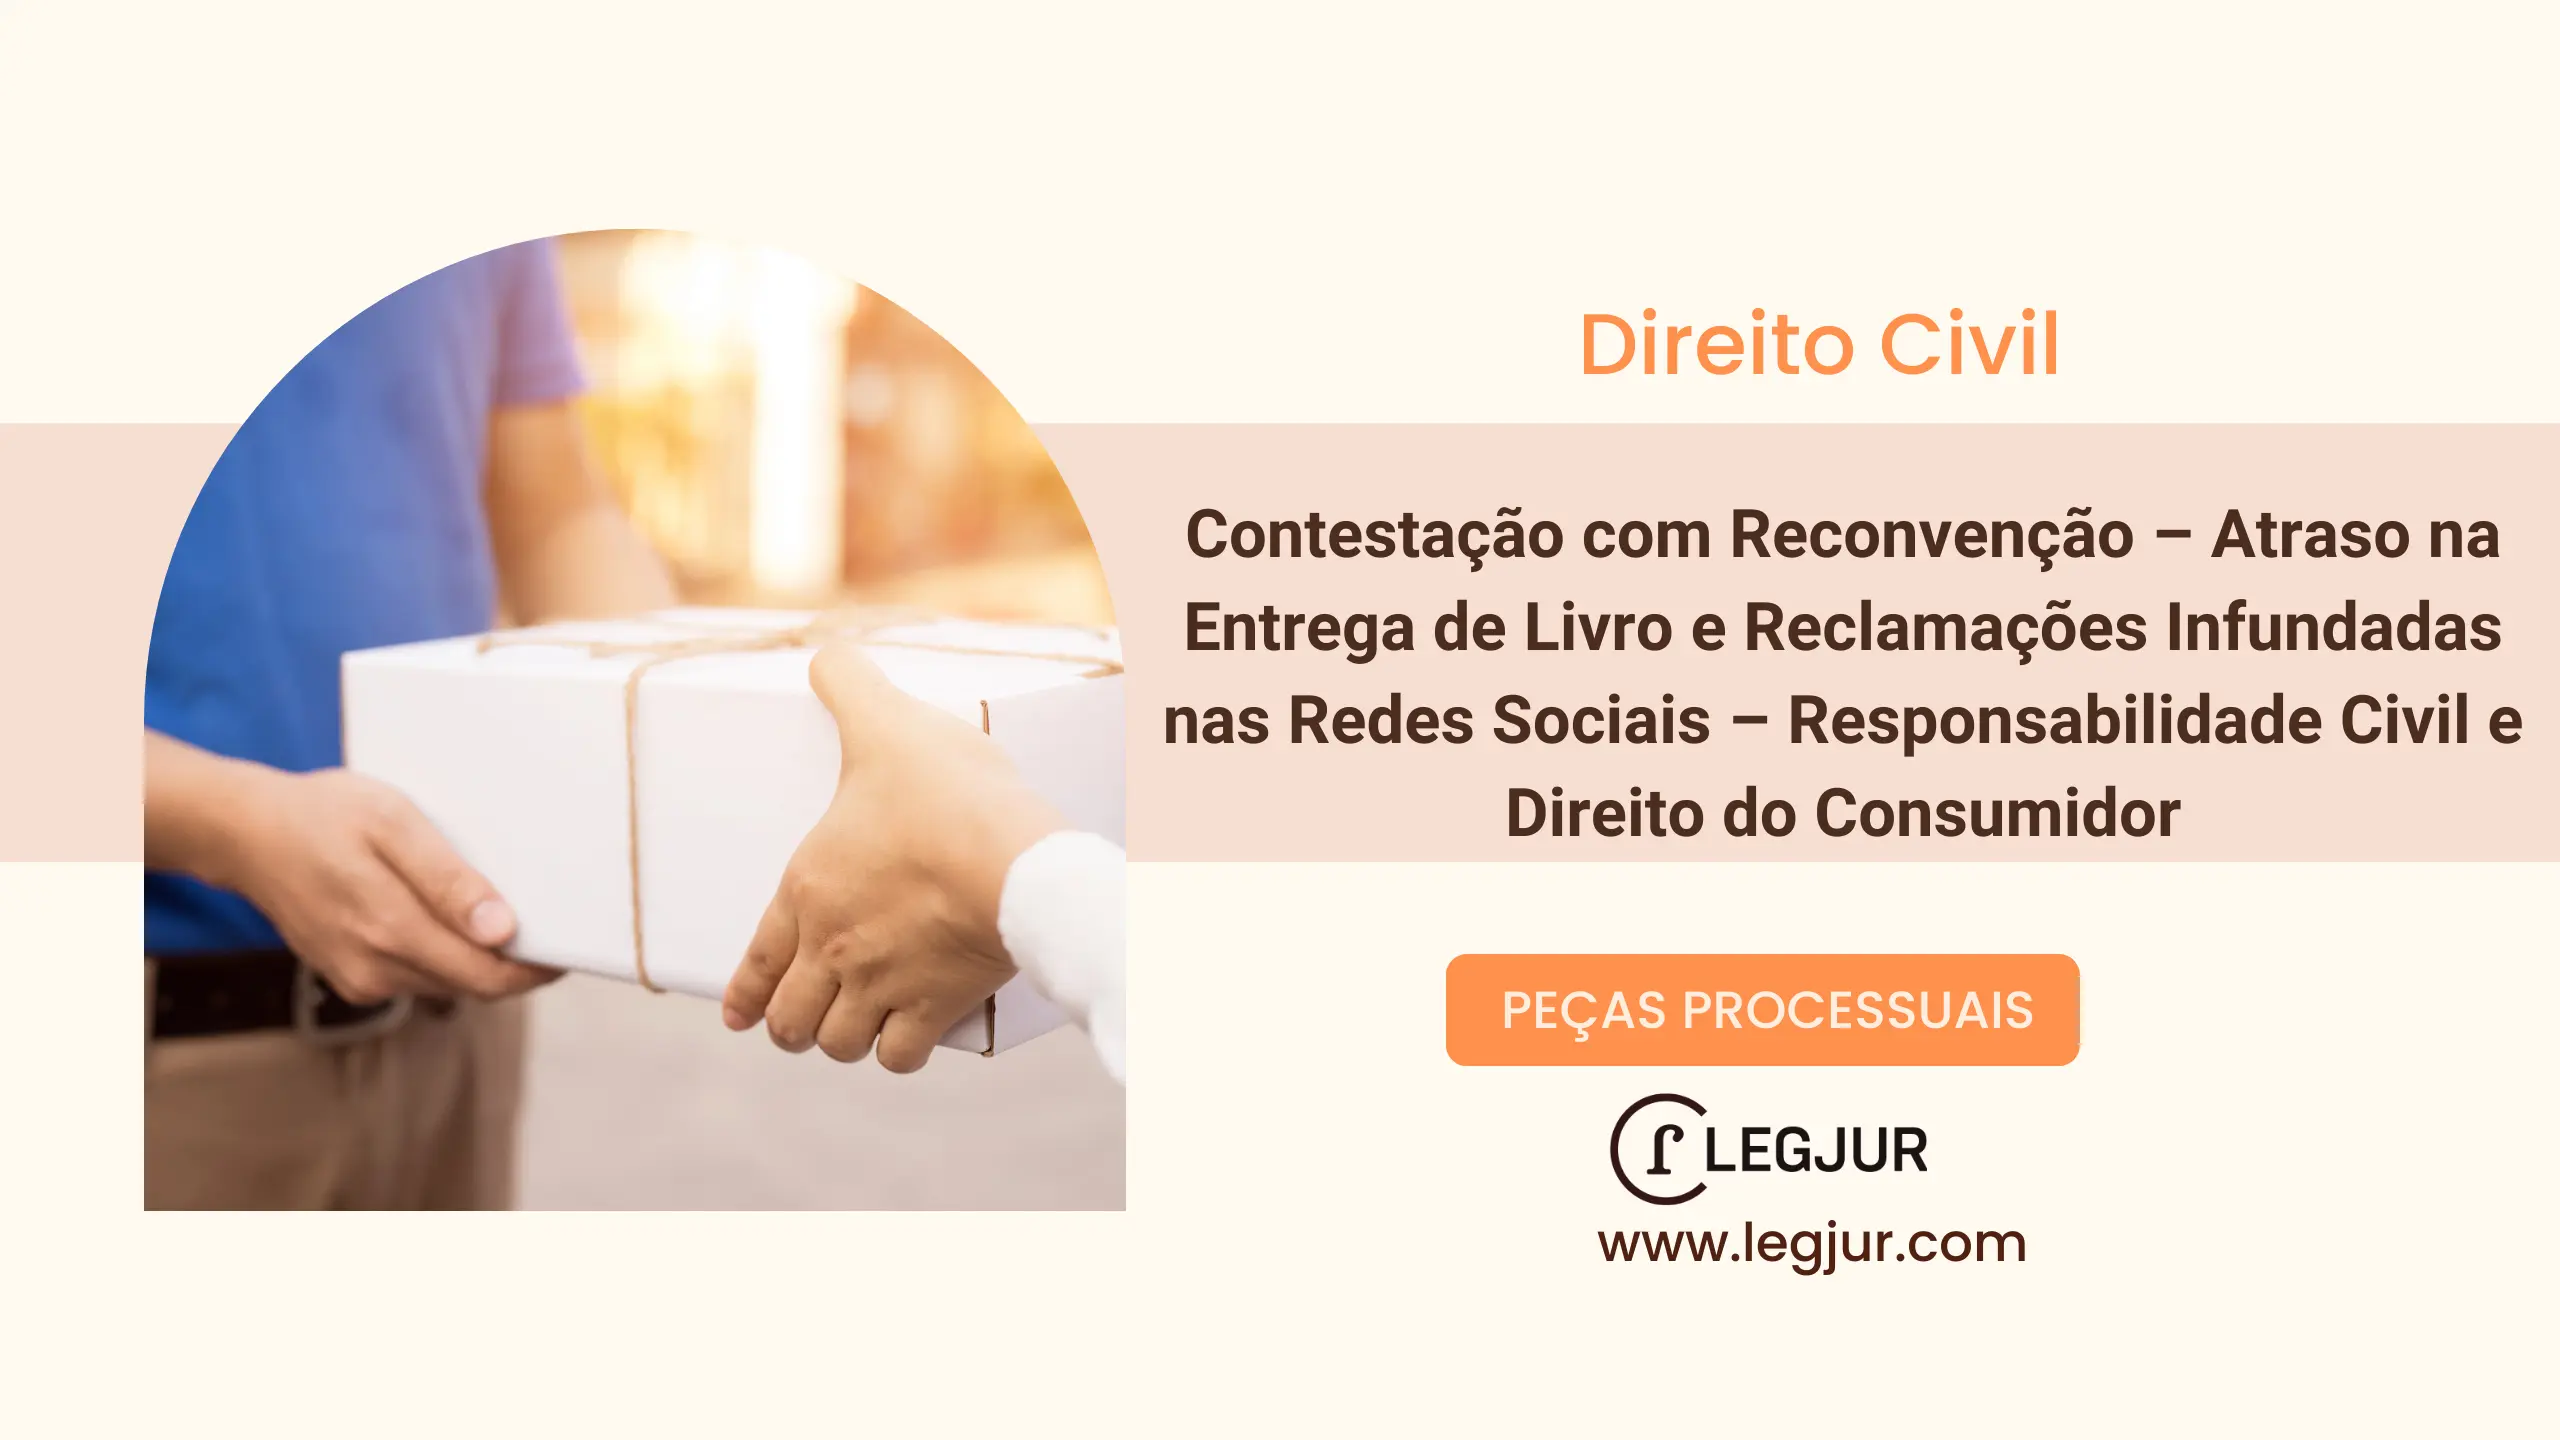 Contestação com Reconvenção – Atraso na Entrega de Livro e Reclamações Infundadas nas Redes Sociais – Responsabilidade Civil e Direito do Consumidor